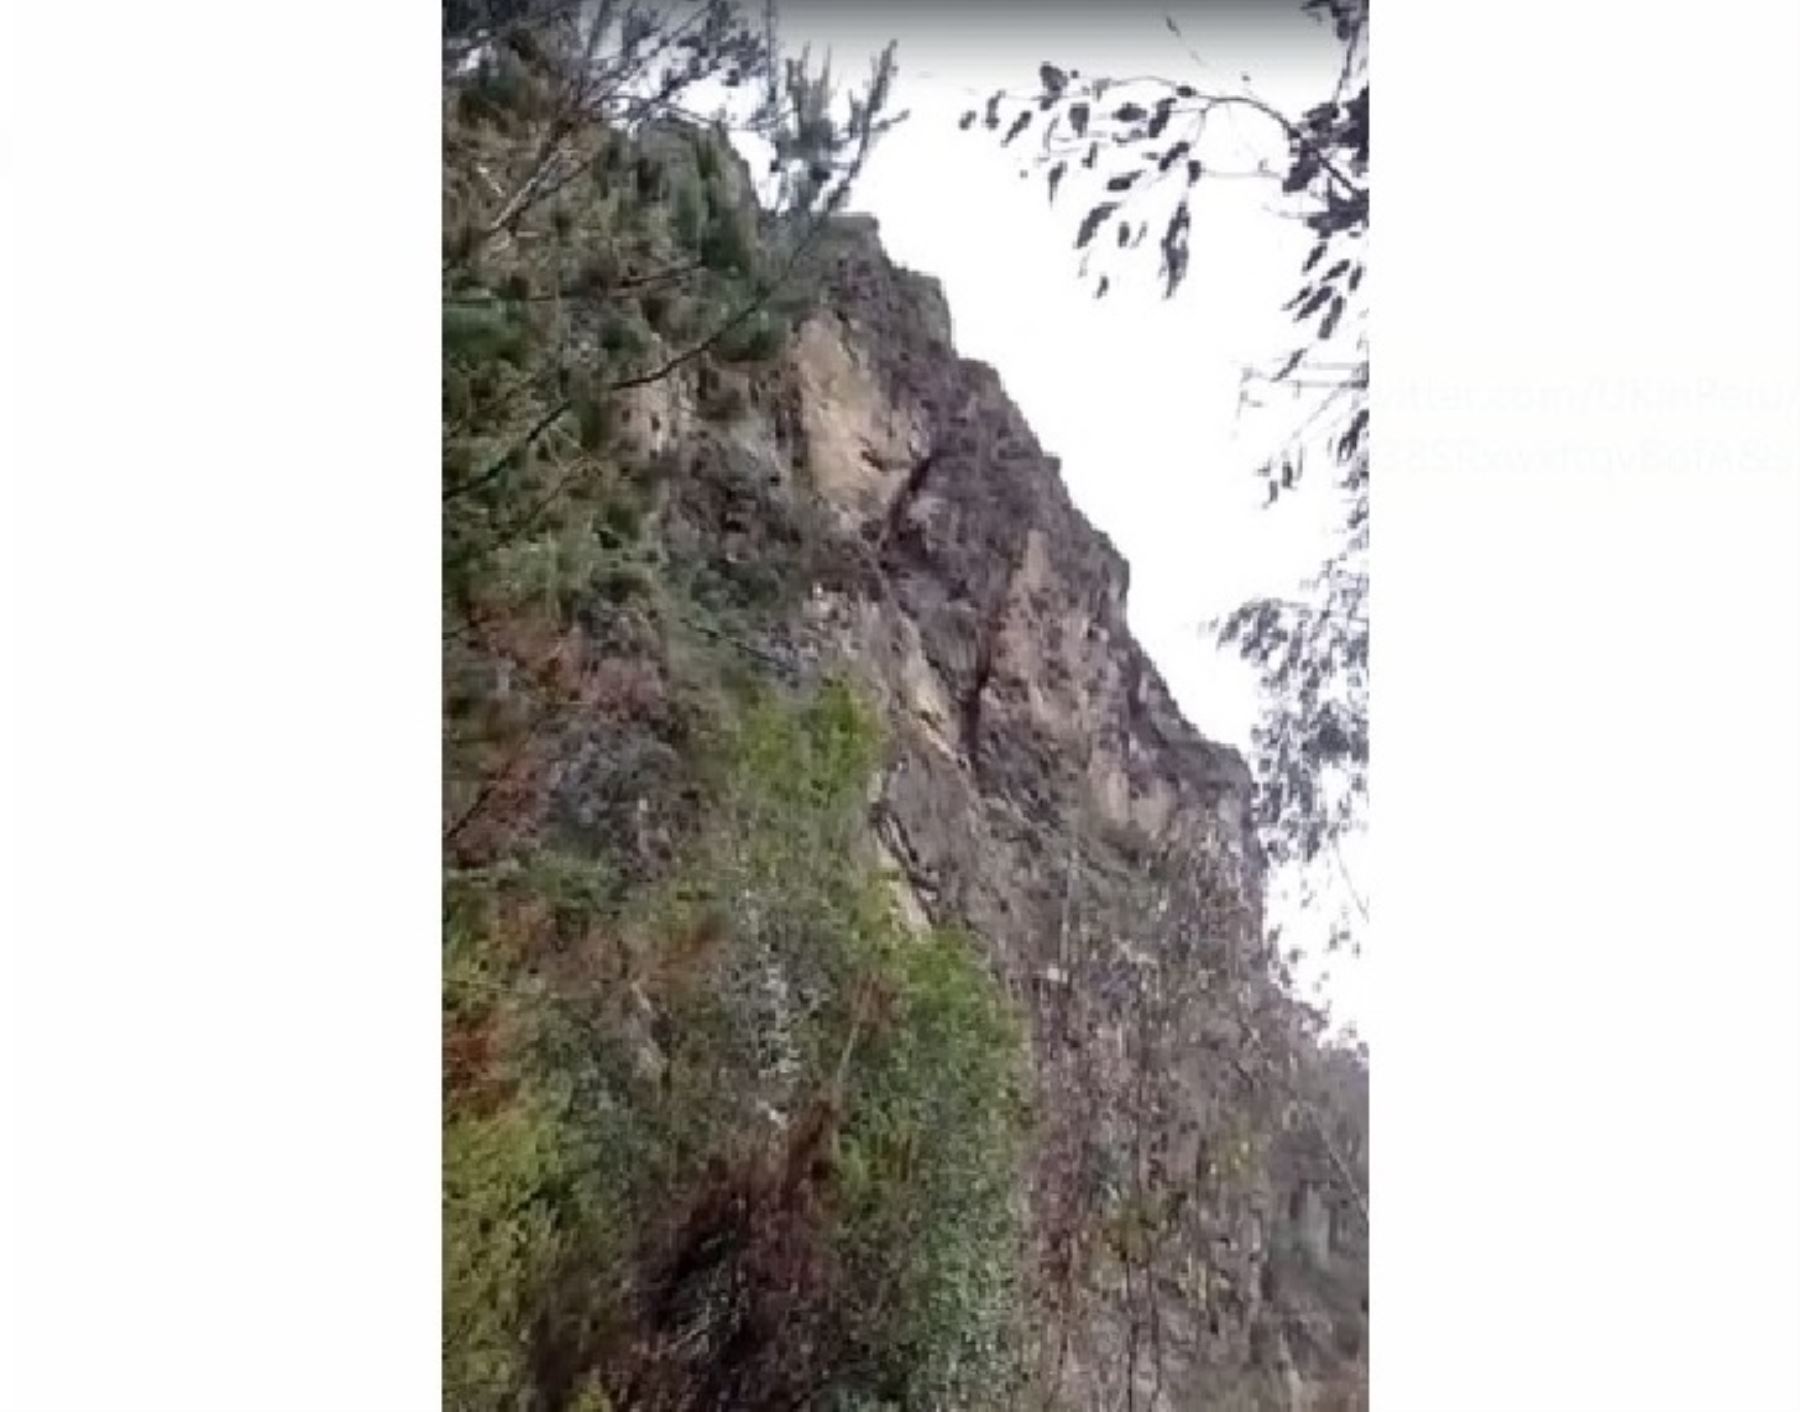 El derrumbe de un cerro en la provincia de Huari, región Áncash, a causa de las lluvias intensas, obligó a evacuar a 60 familias.